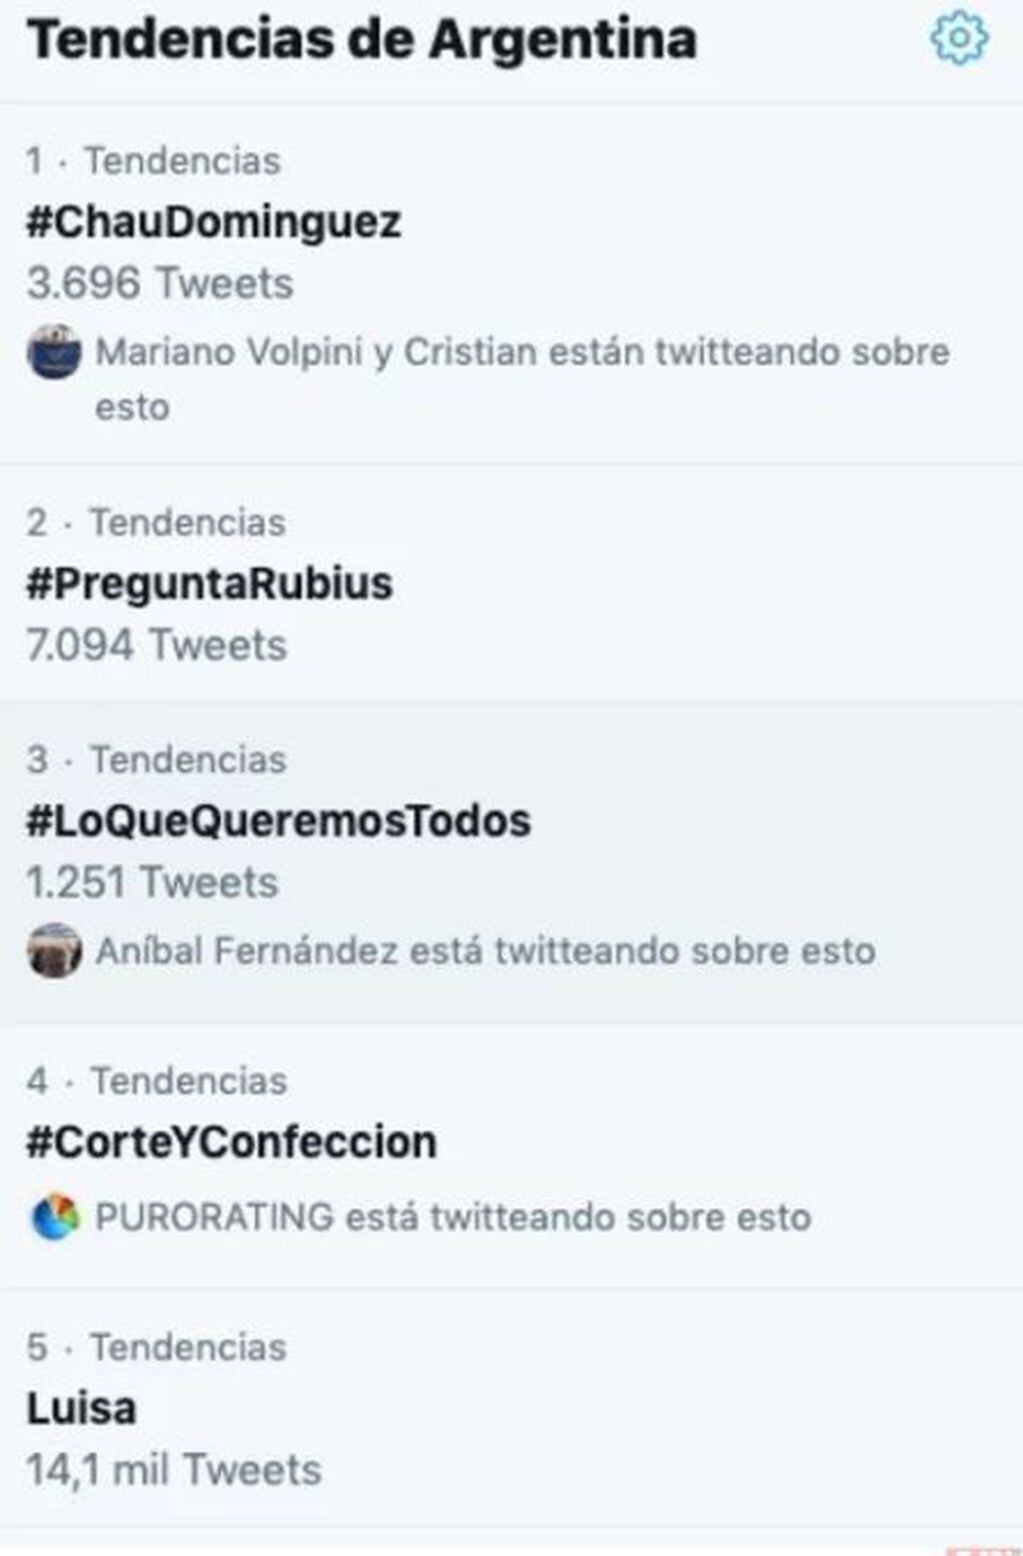 #ChauDominguez fue tendencia en Twitter.